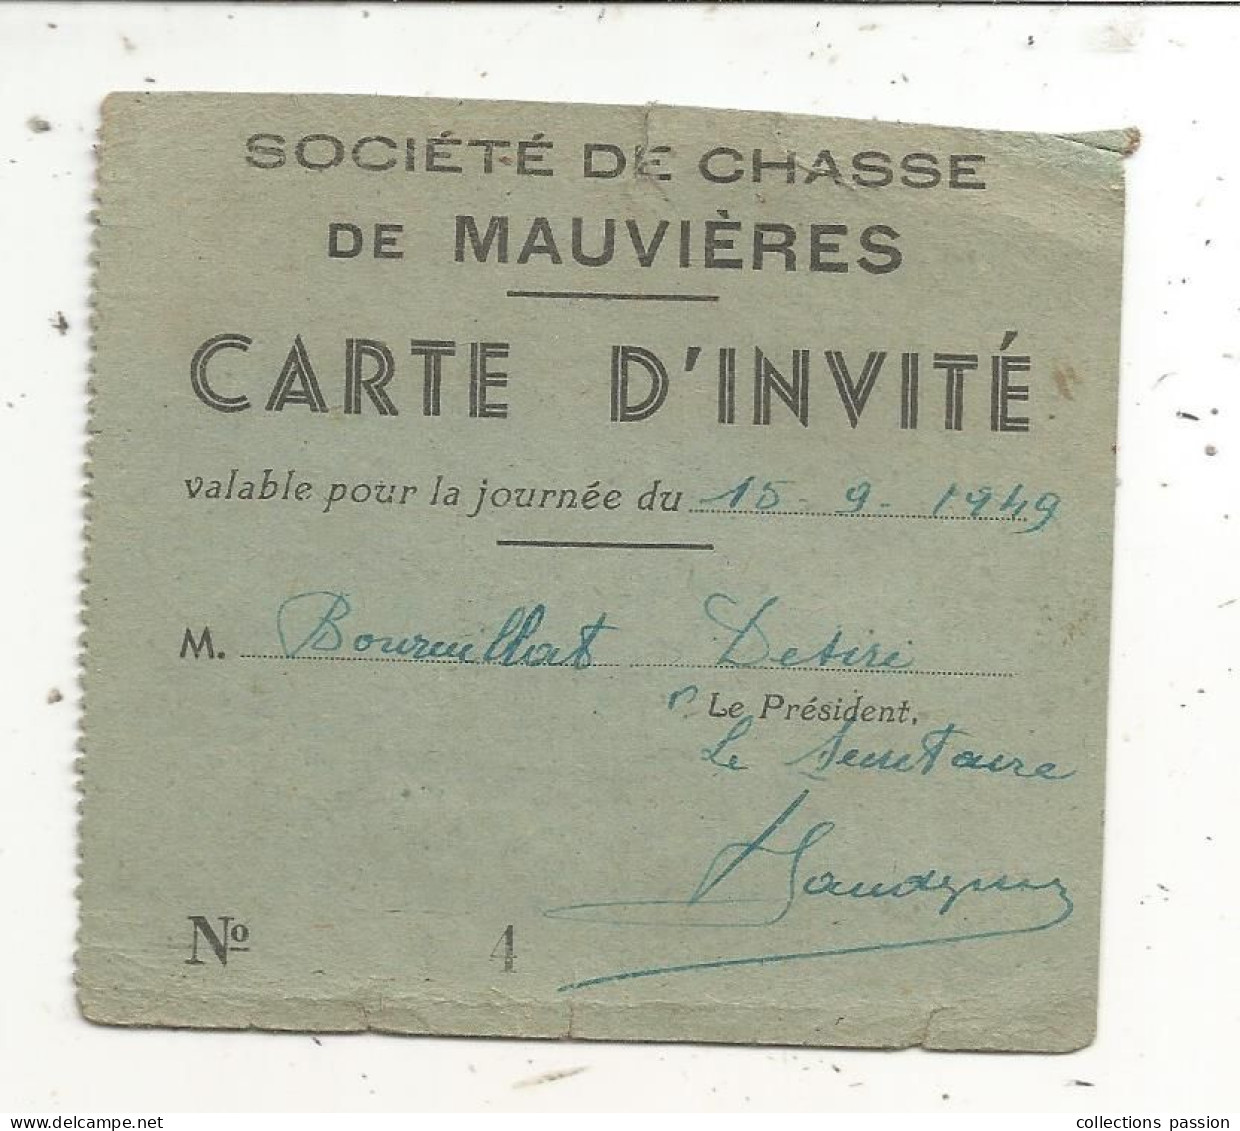 Carte D'invité, Société De Chasse De Mauvières, Indre, 1949 - Lidmaatschapskaarten